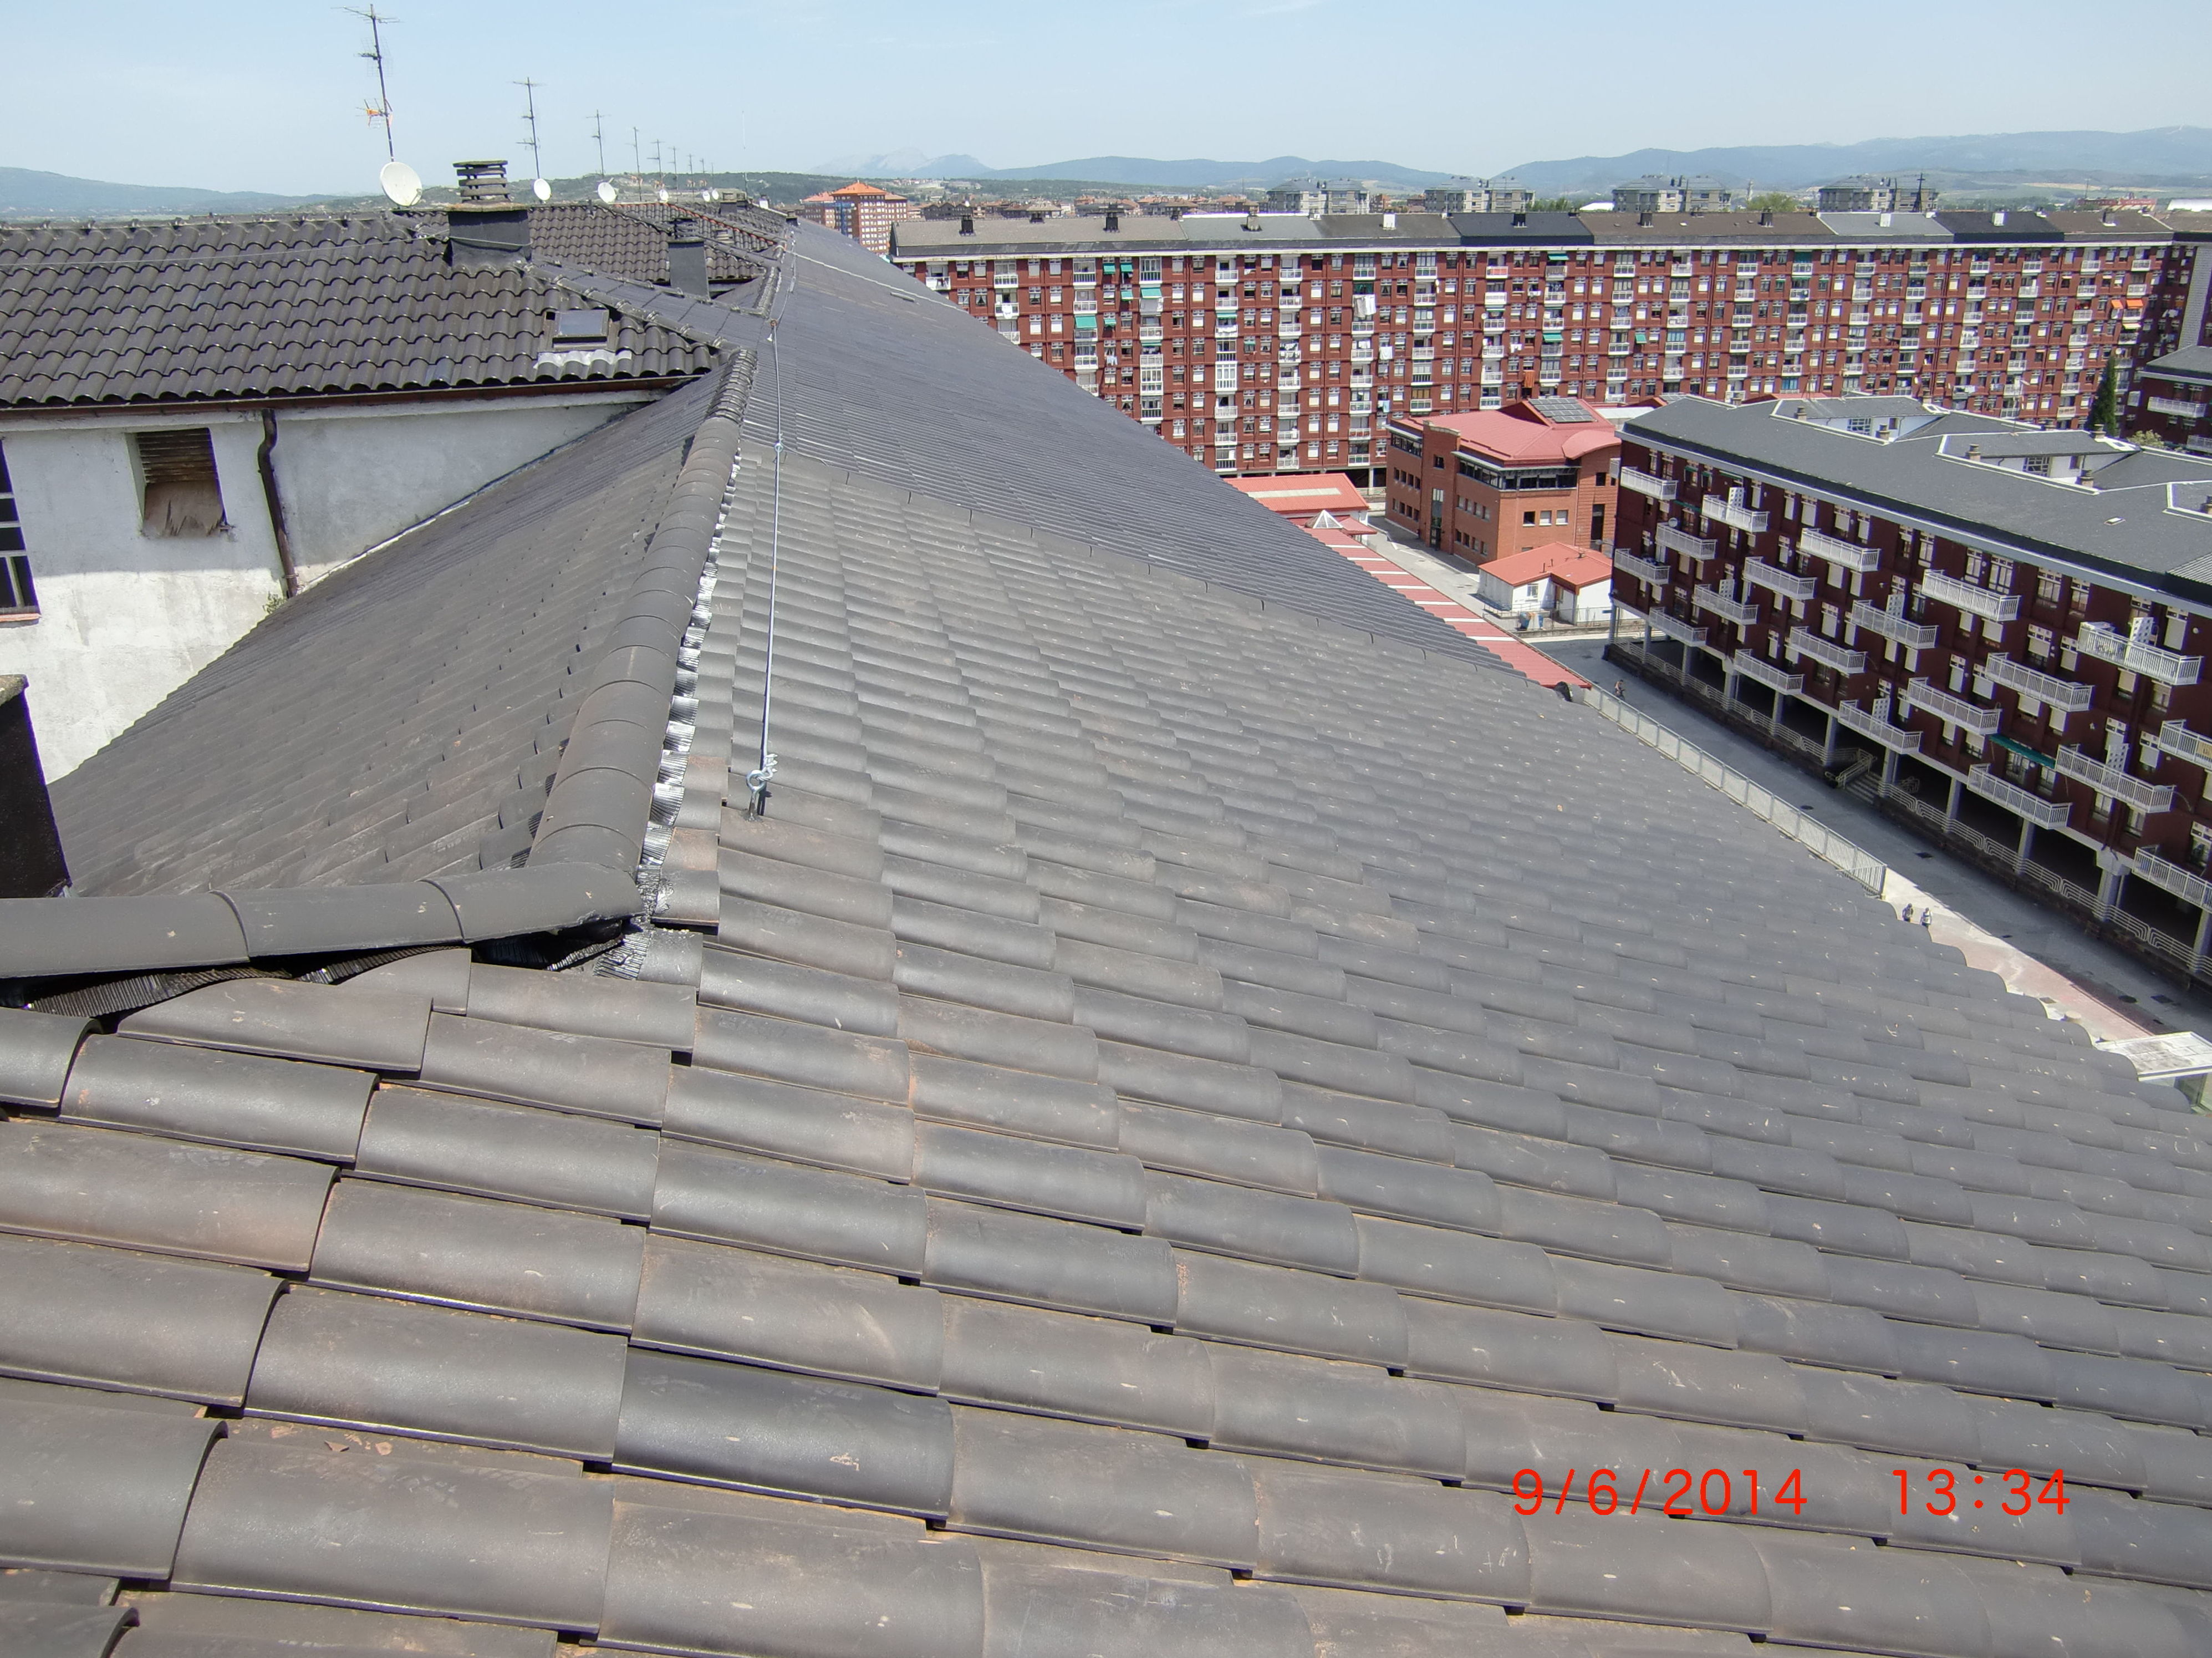 Rehabilitación de tejado en la calle Chile, 6 Vitoria-Gasteiz después de la obra